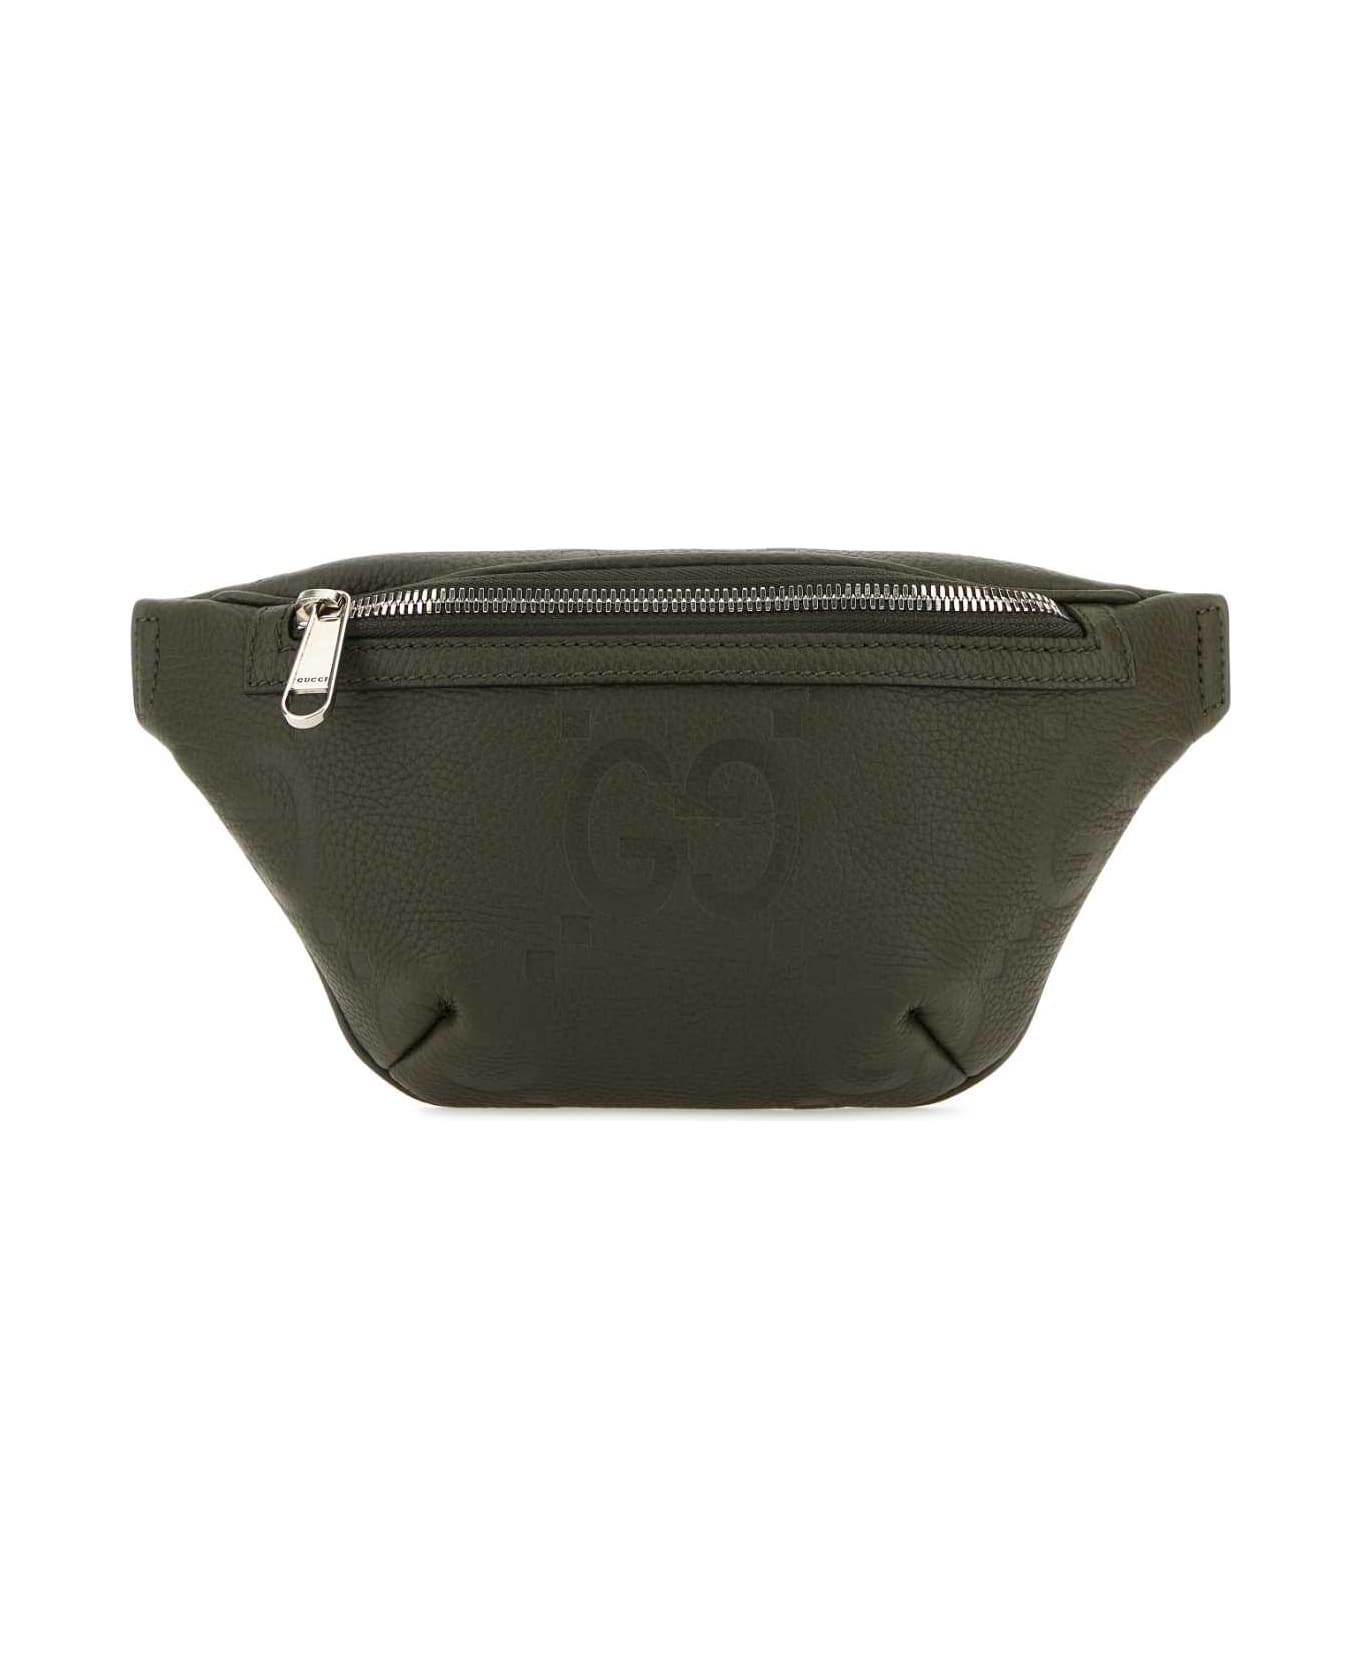 Gucci Olive Green Leather Belt Bag - DKOLVINDOLVDO